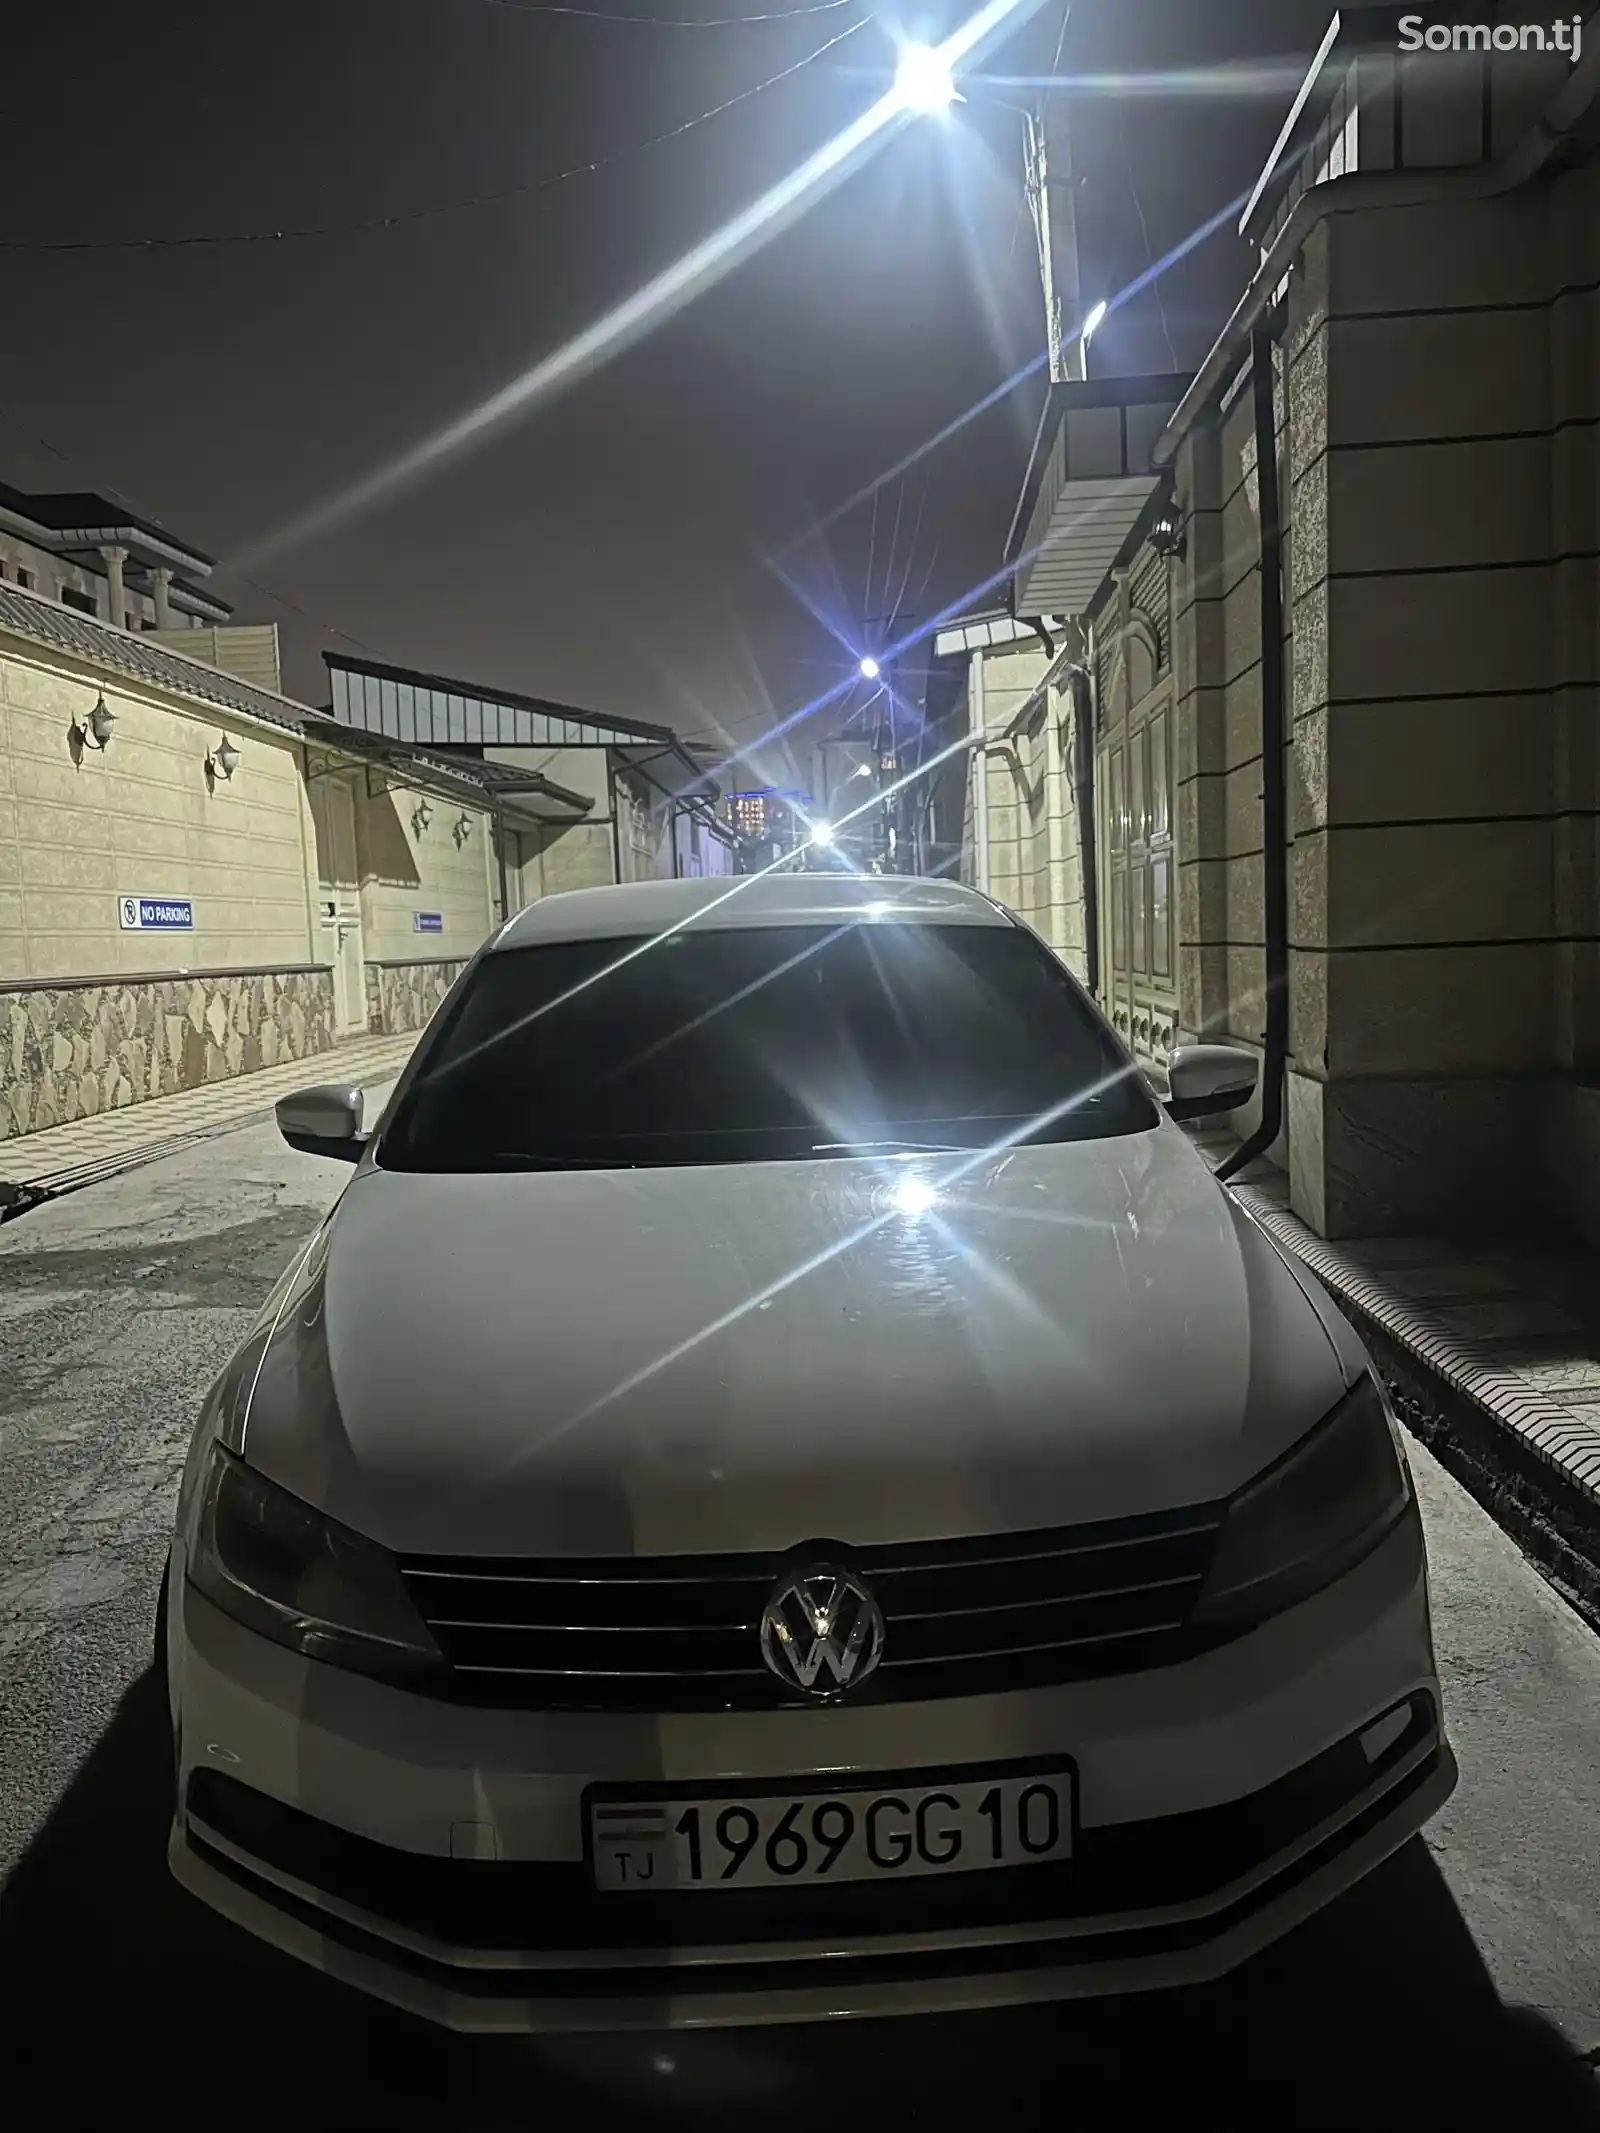 Volkswagen Jetta, 2014-1